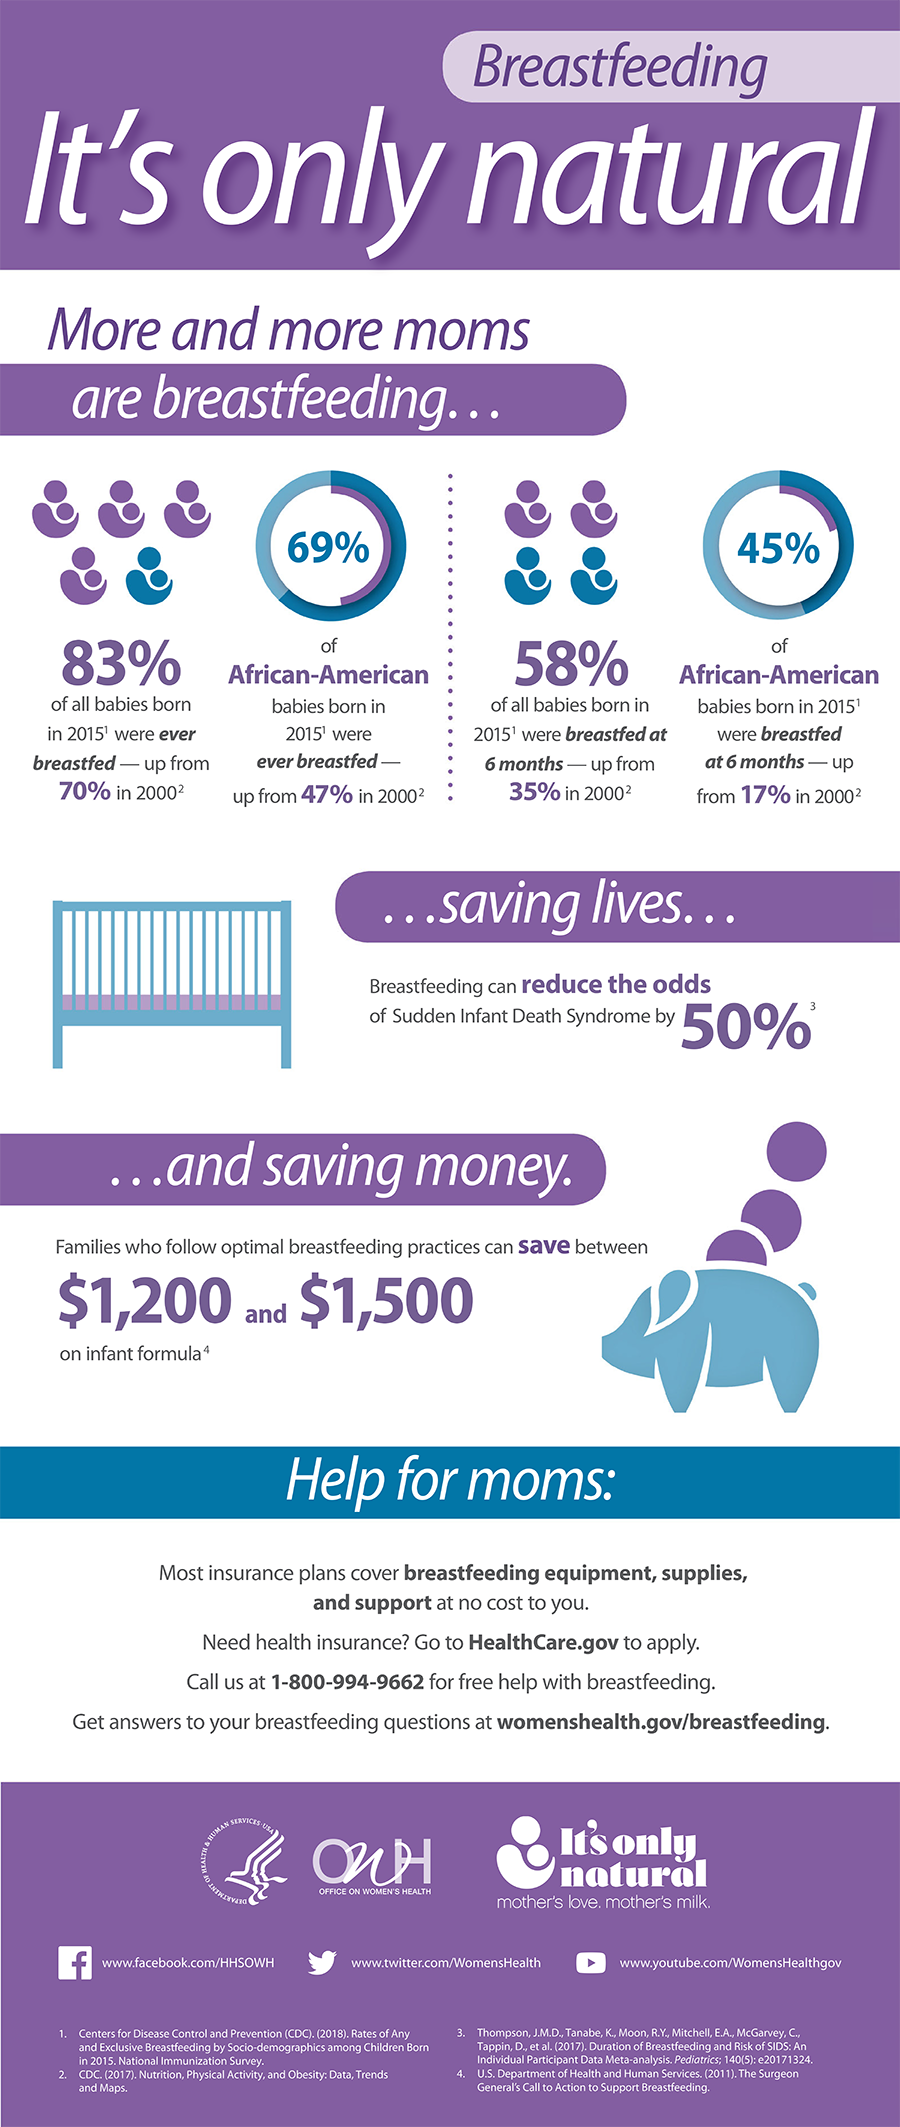 Breastfeeding infographic